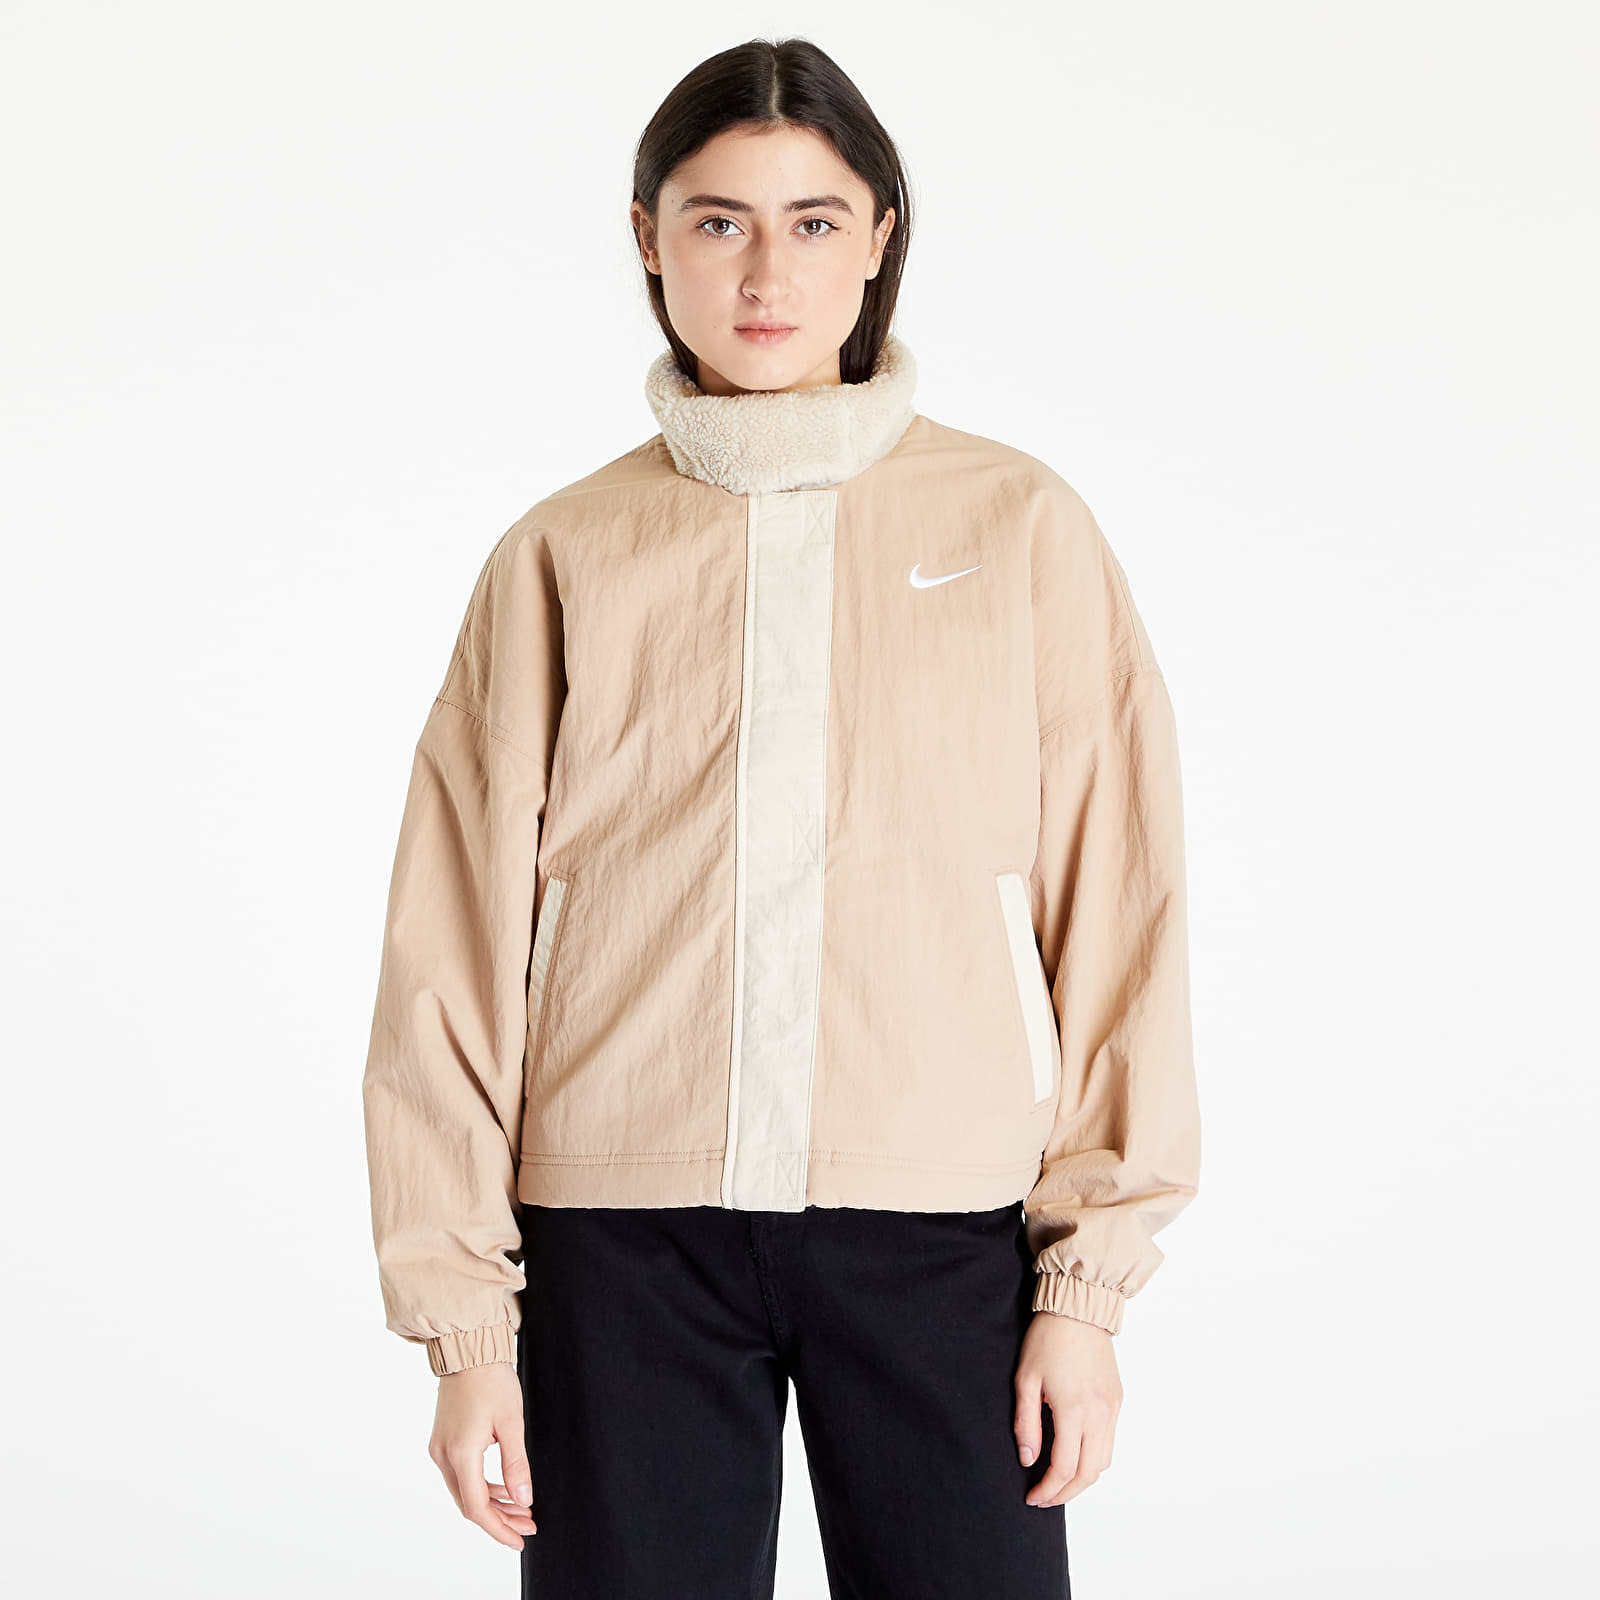 Levně Nike Sportswear Essential Women's Woven Fleece-Lined Jacket Hemp/ Sanddrift/ White